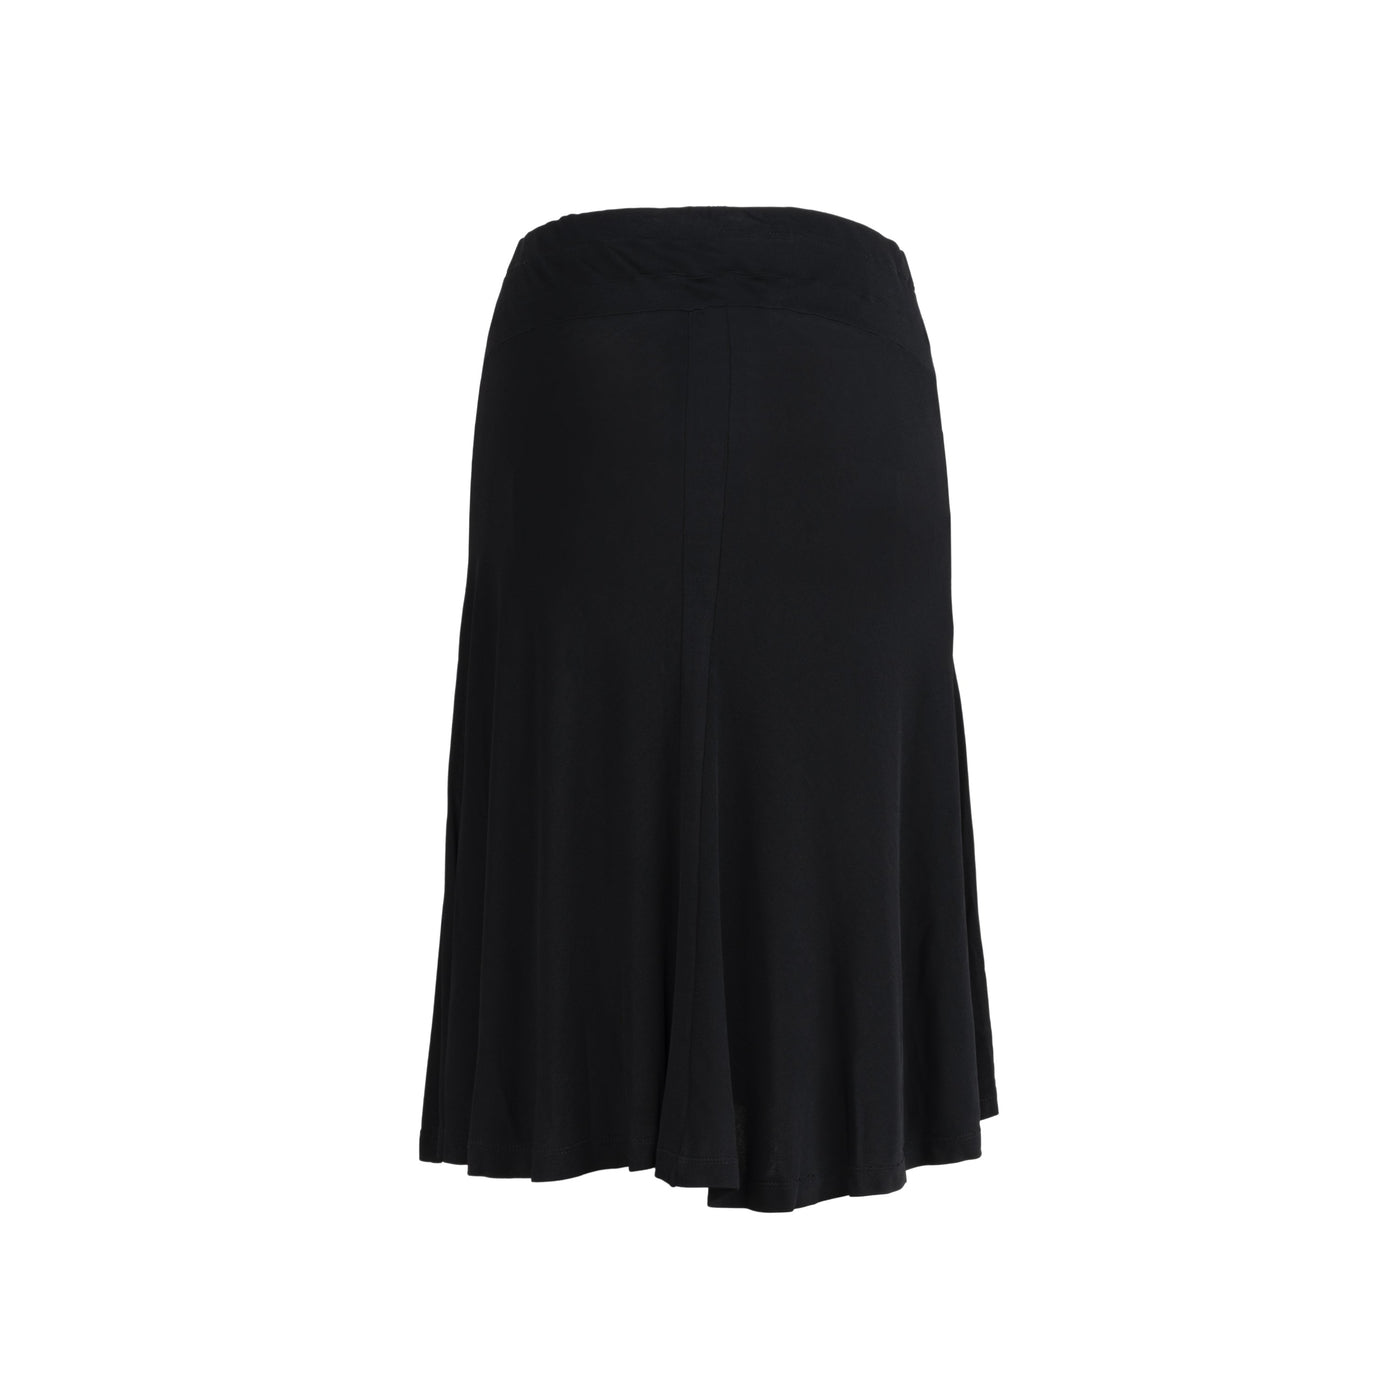 Yves Saint Laurent black skirt pre-owned